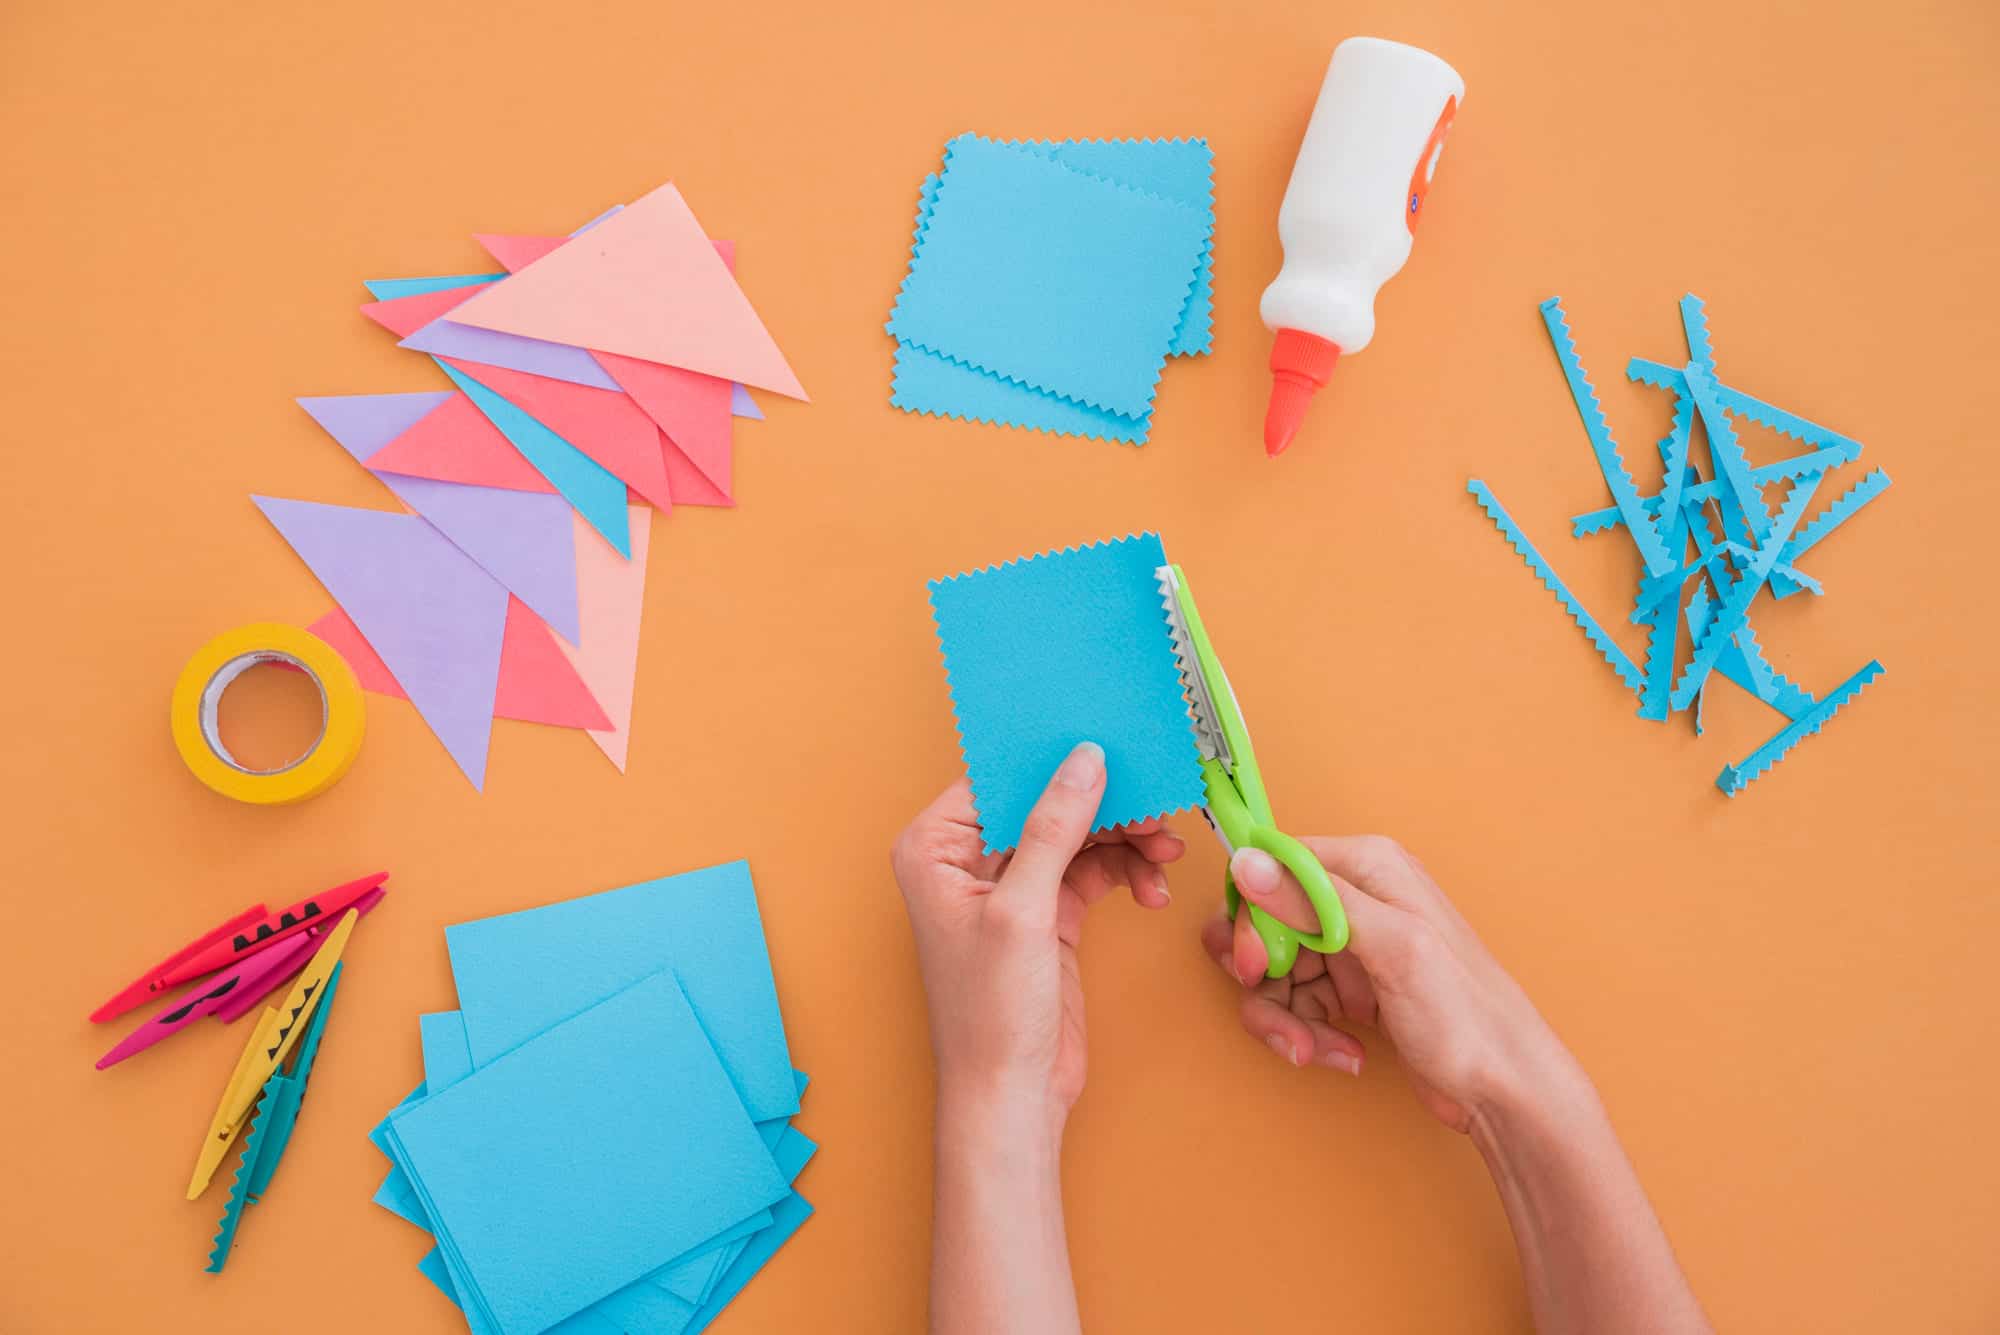 Hartie de origami colorata, foarfece, accesorii craft.